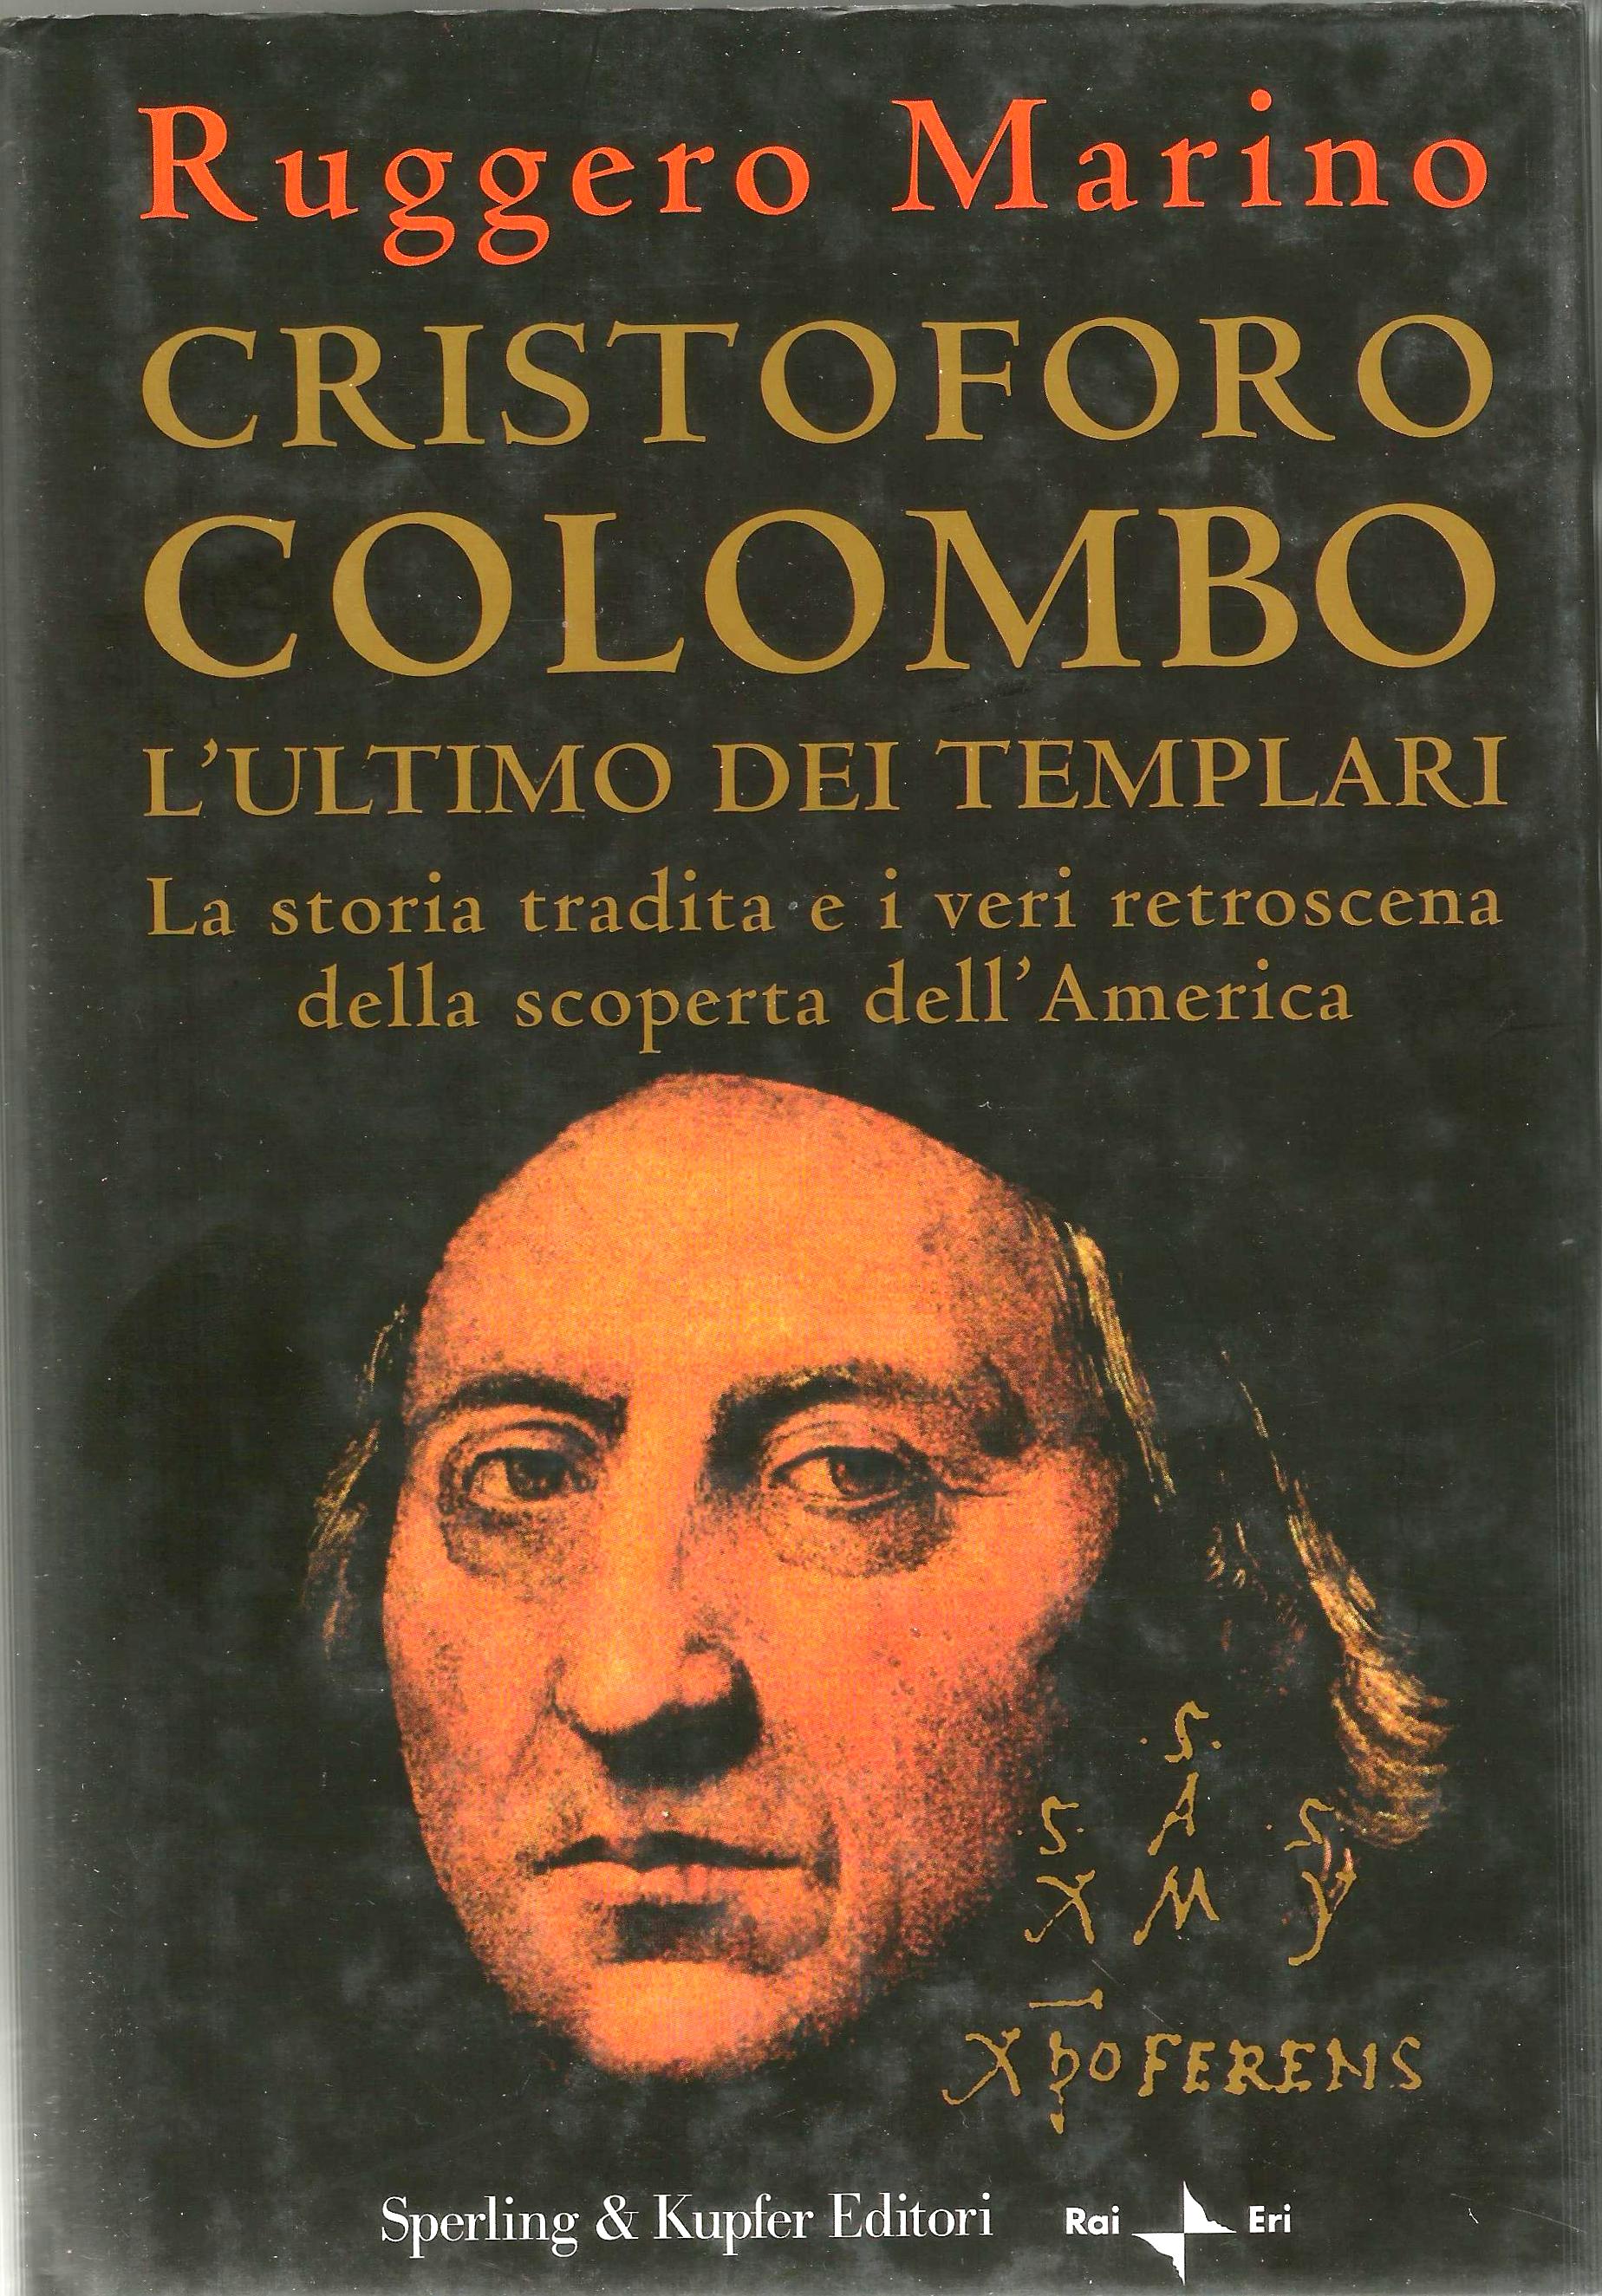 CRISTOFORO COLOMBO, L'ULTIMO DEI TEMPLARI - 2005